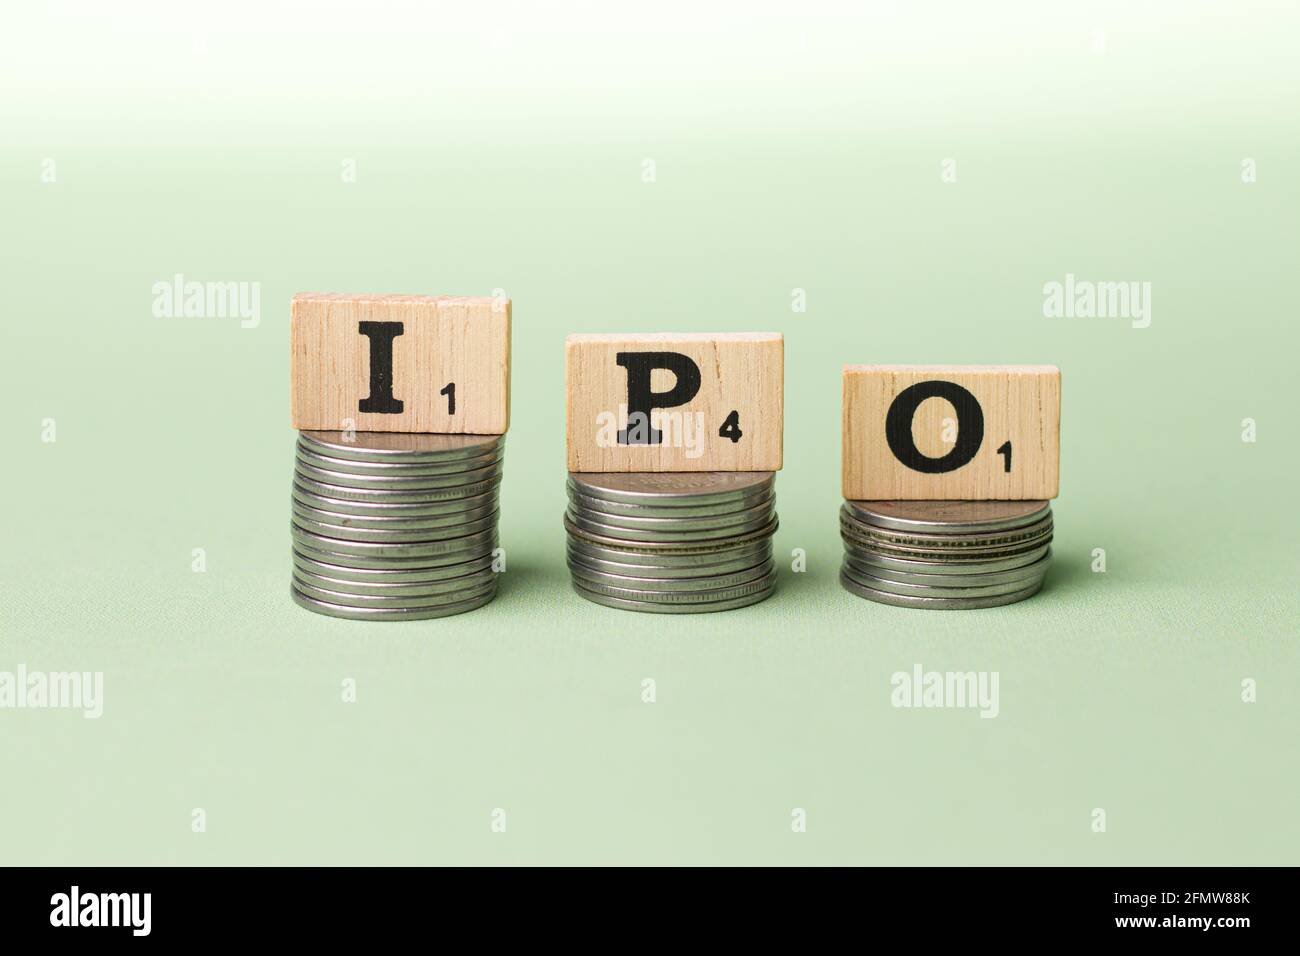 Assam, inde - 30 mars 2021 : mot IPO écrit sur une image de stock de cubes en bois. Banque D'Images